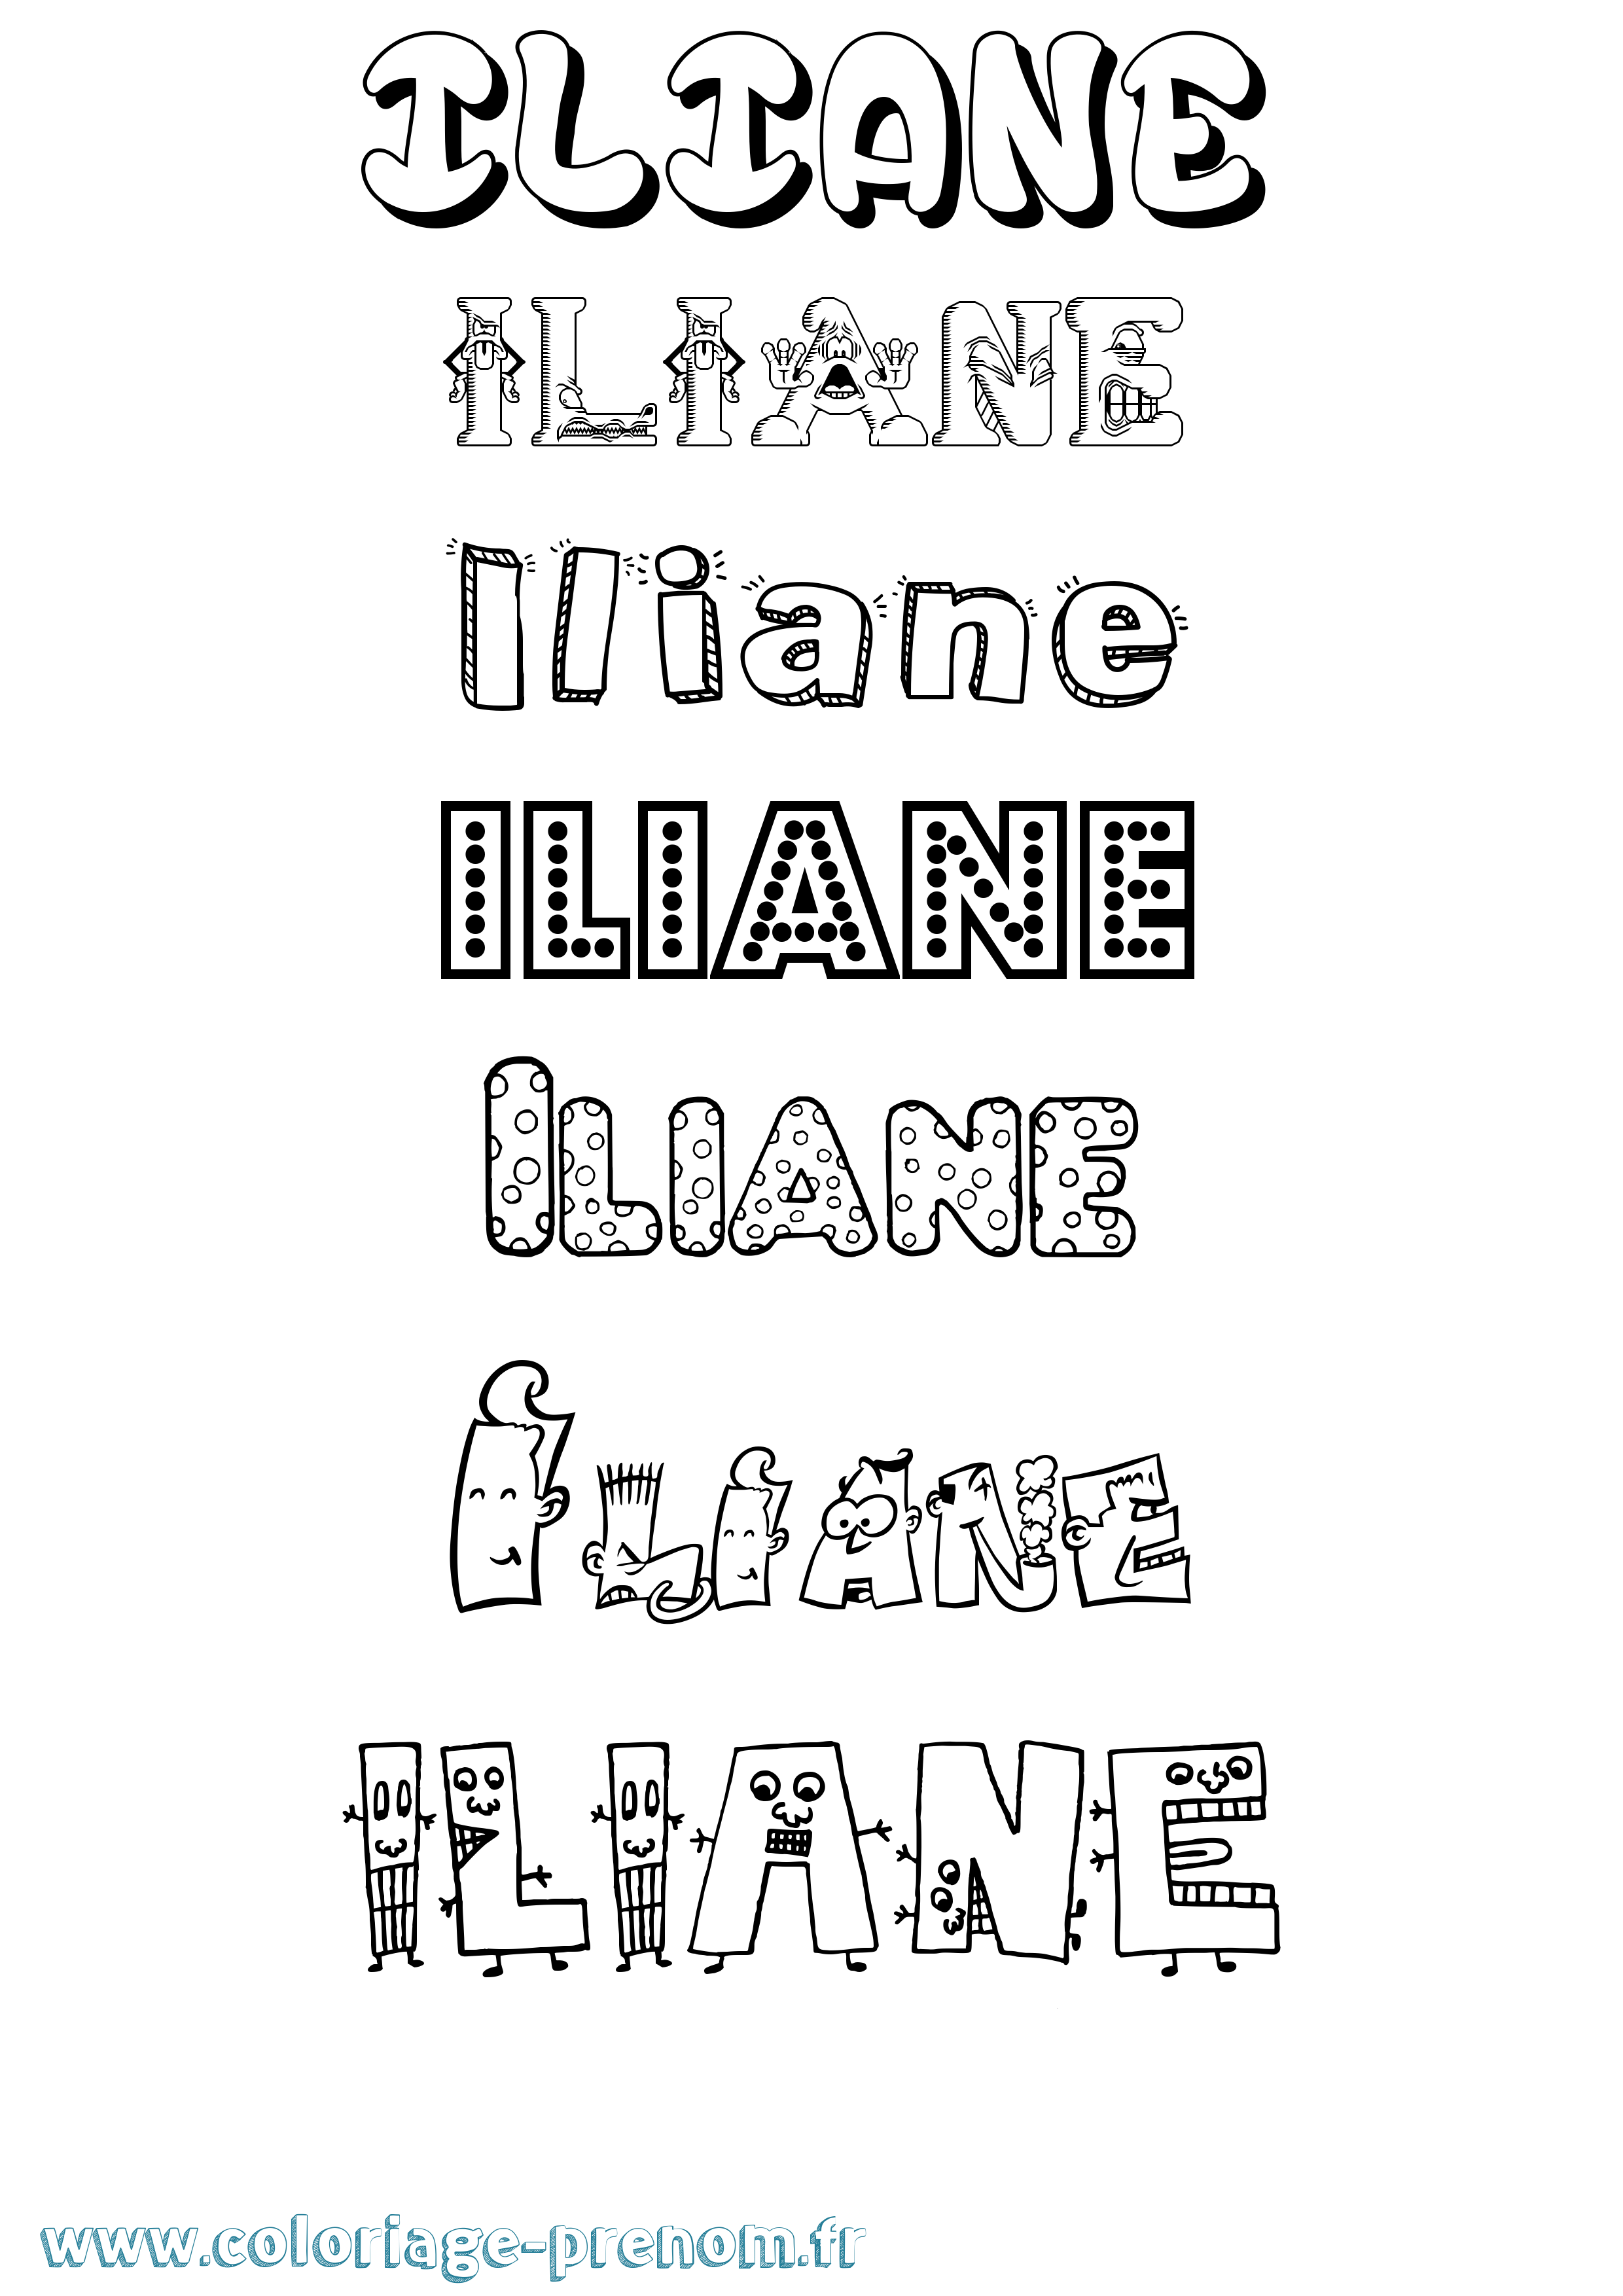 Coloriage prénom Iliane Fun